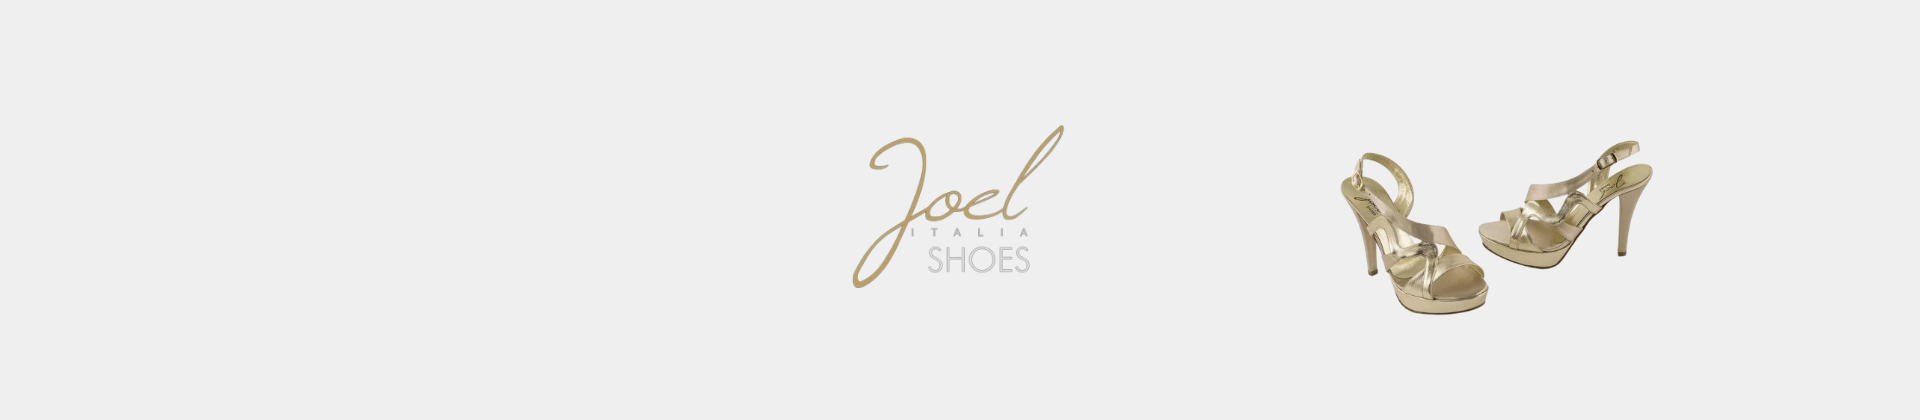 Joel Italian Shoes Women's Shoes On Line